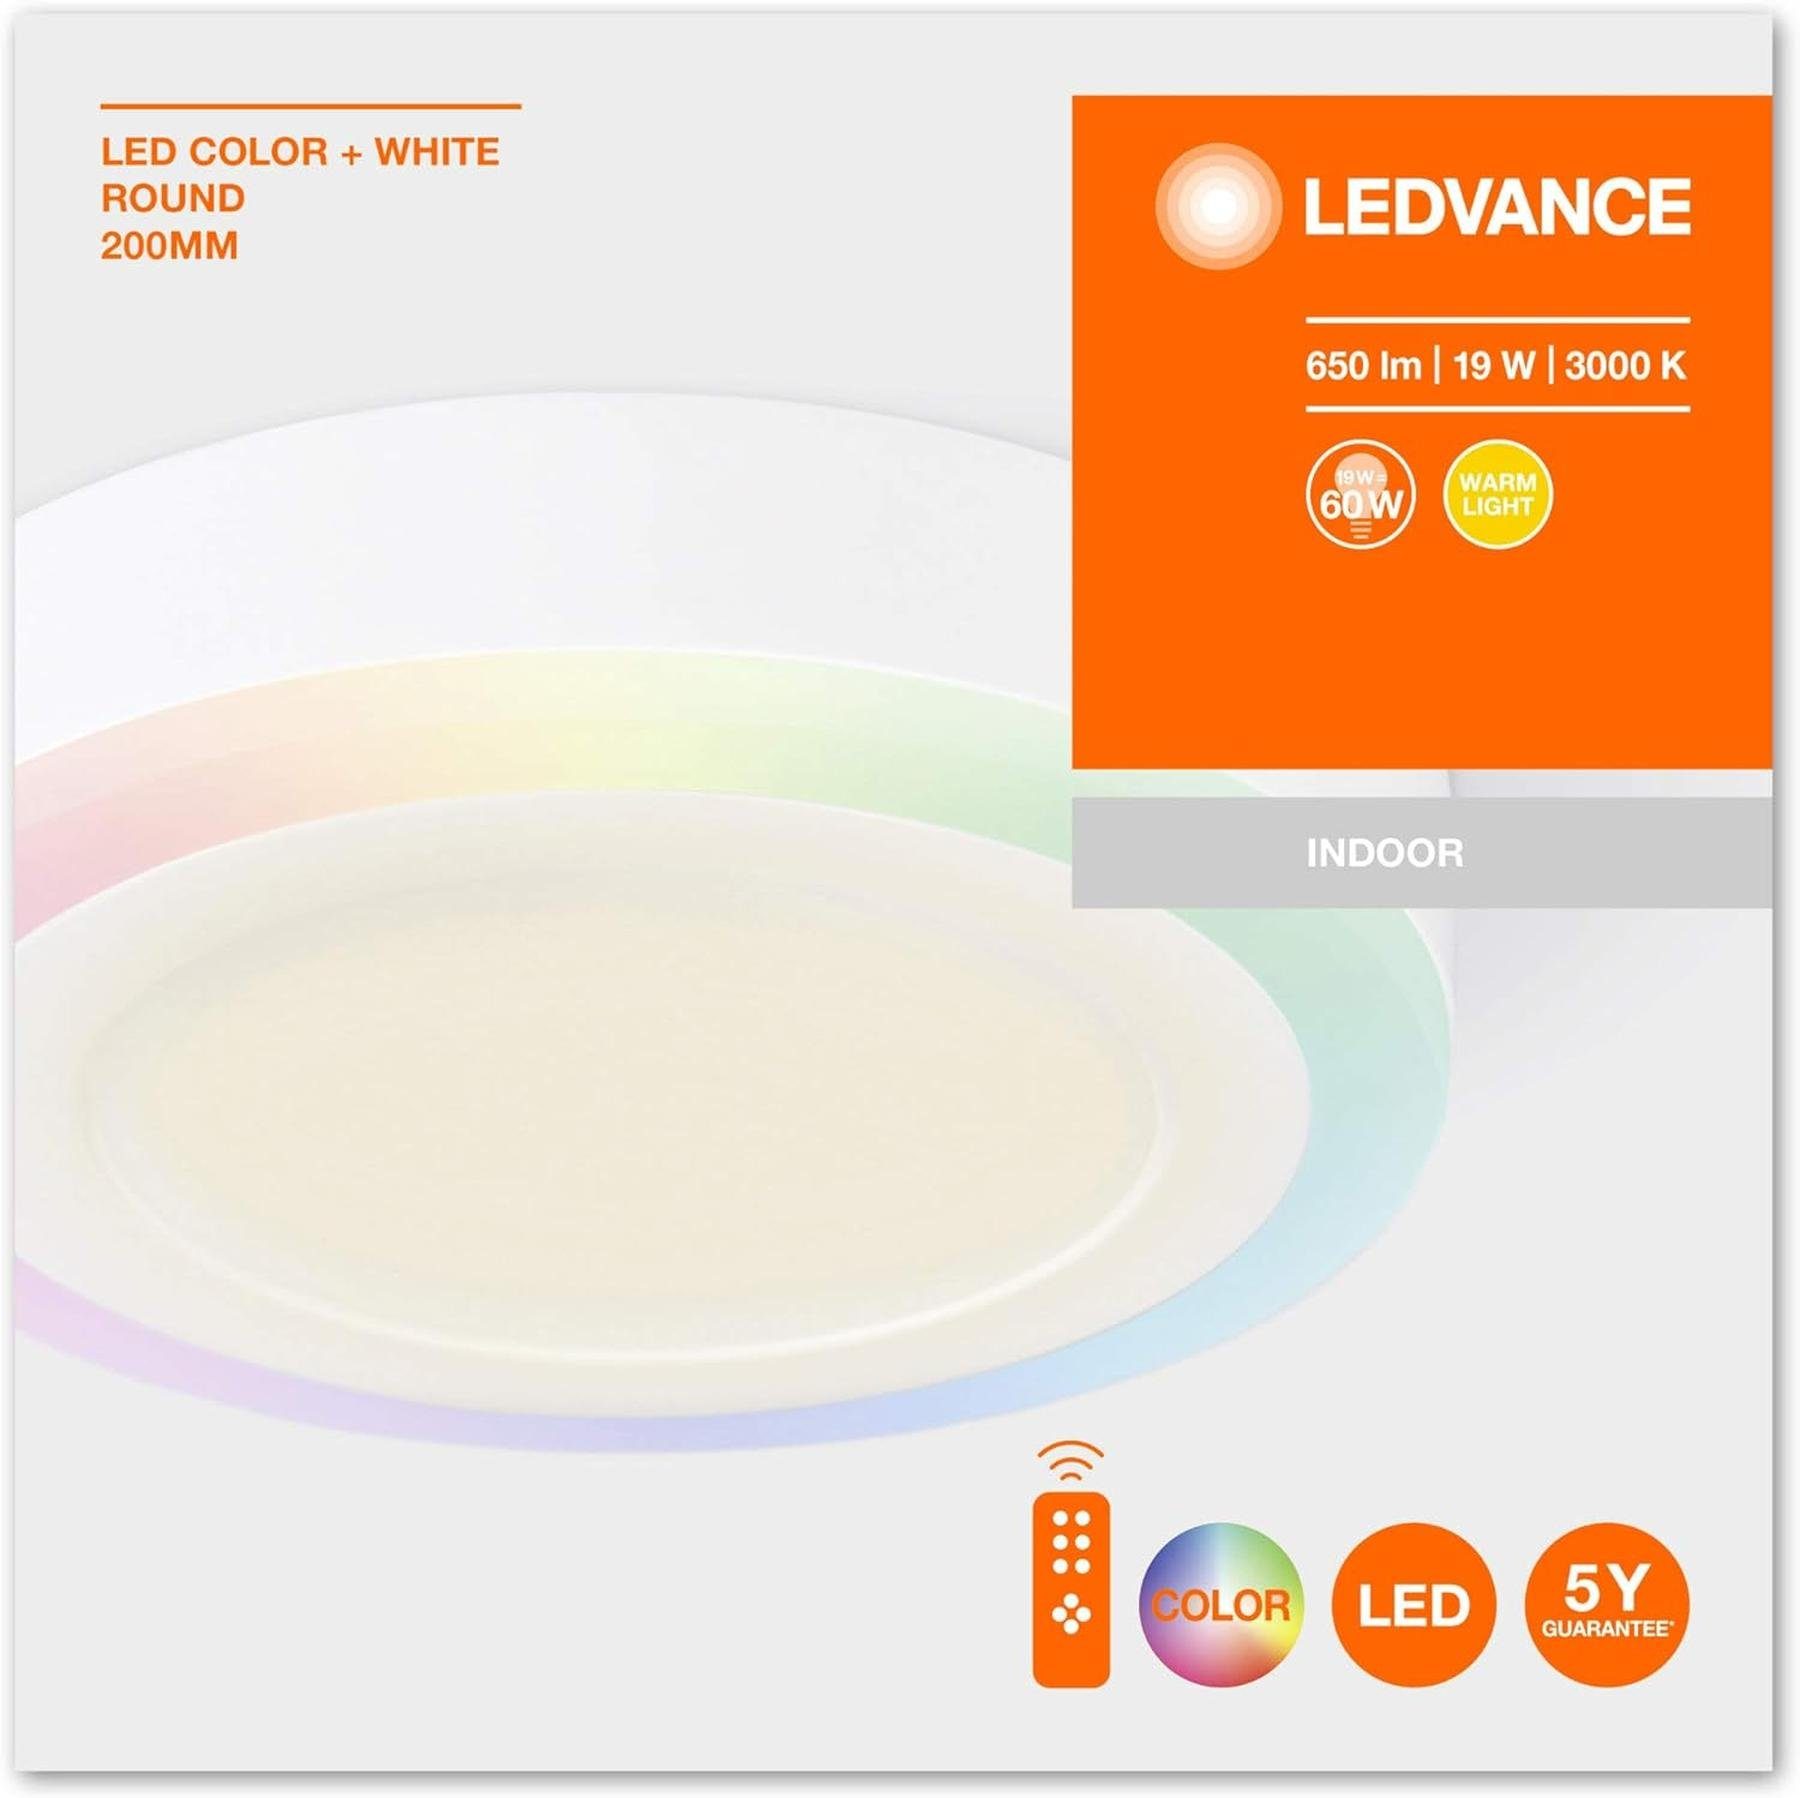 Ledvance LED Deckenleuchte LEDVANCE Dekorative +, RGB-Farben, Warmweiß, Wand- Dimmbar Deckenleuchte, und RGB-Farben, LED